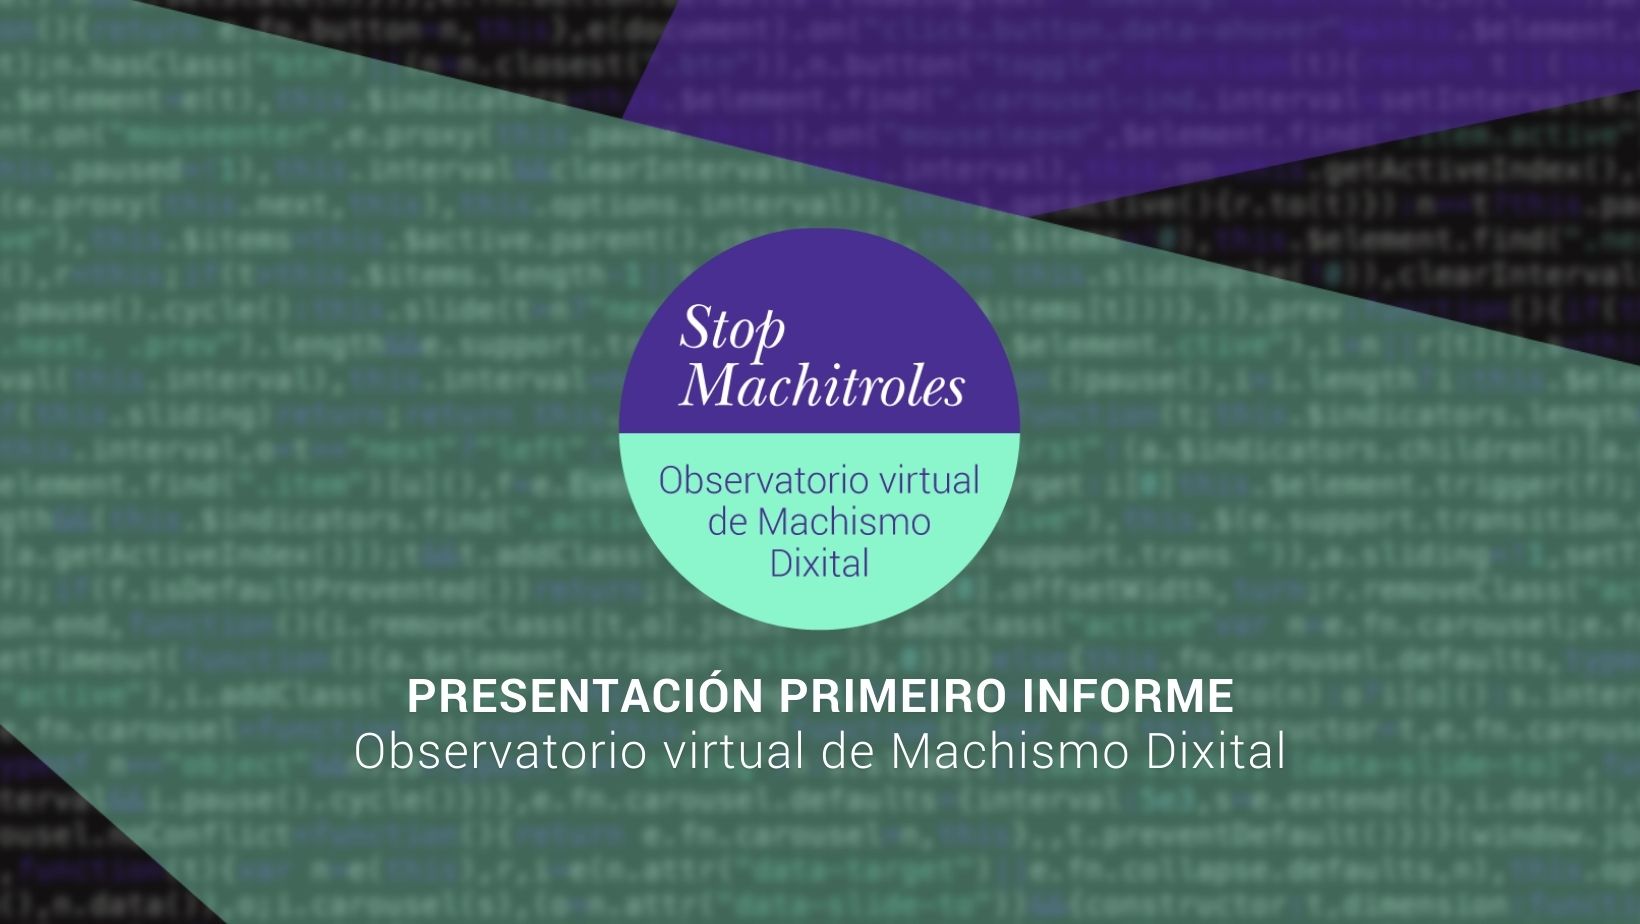 Catedra Feminismos - STOP MACHITROLES presentacion primeiro informe 2022